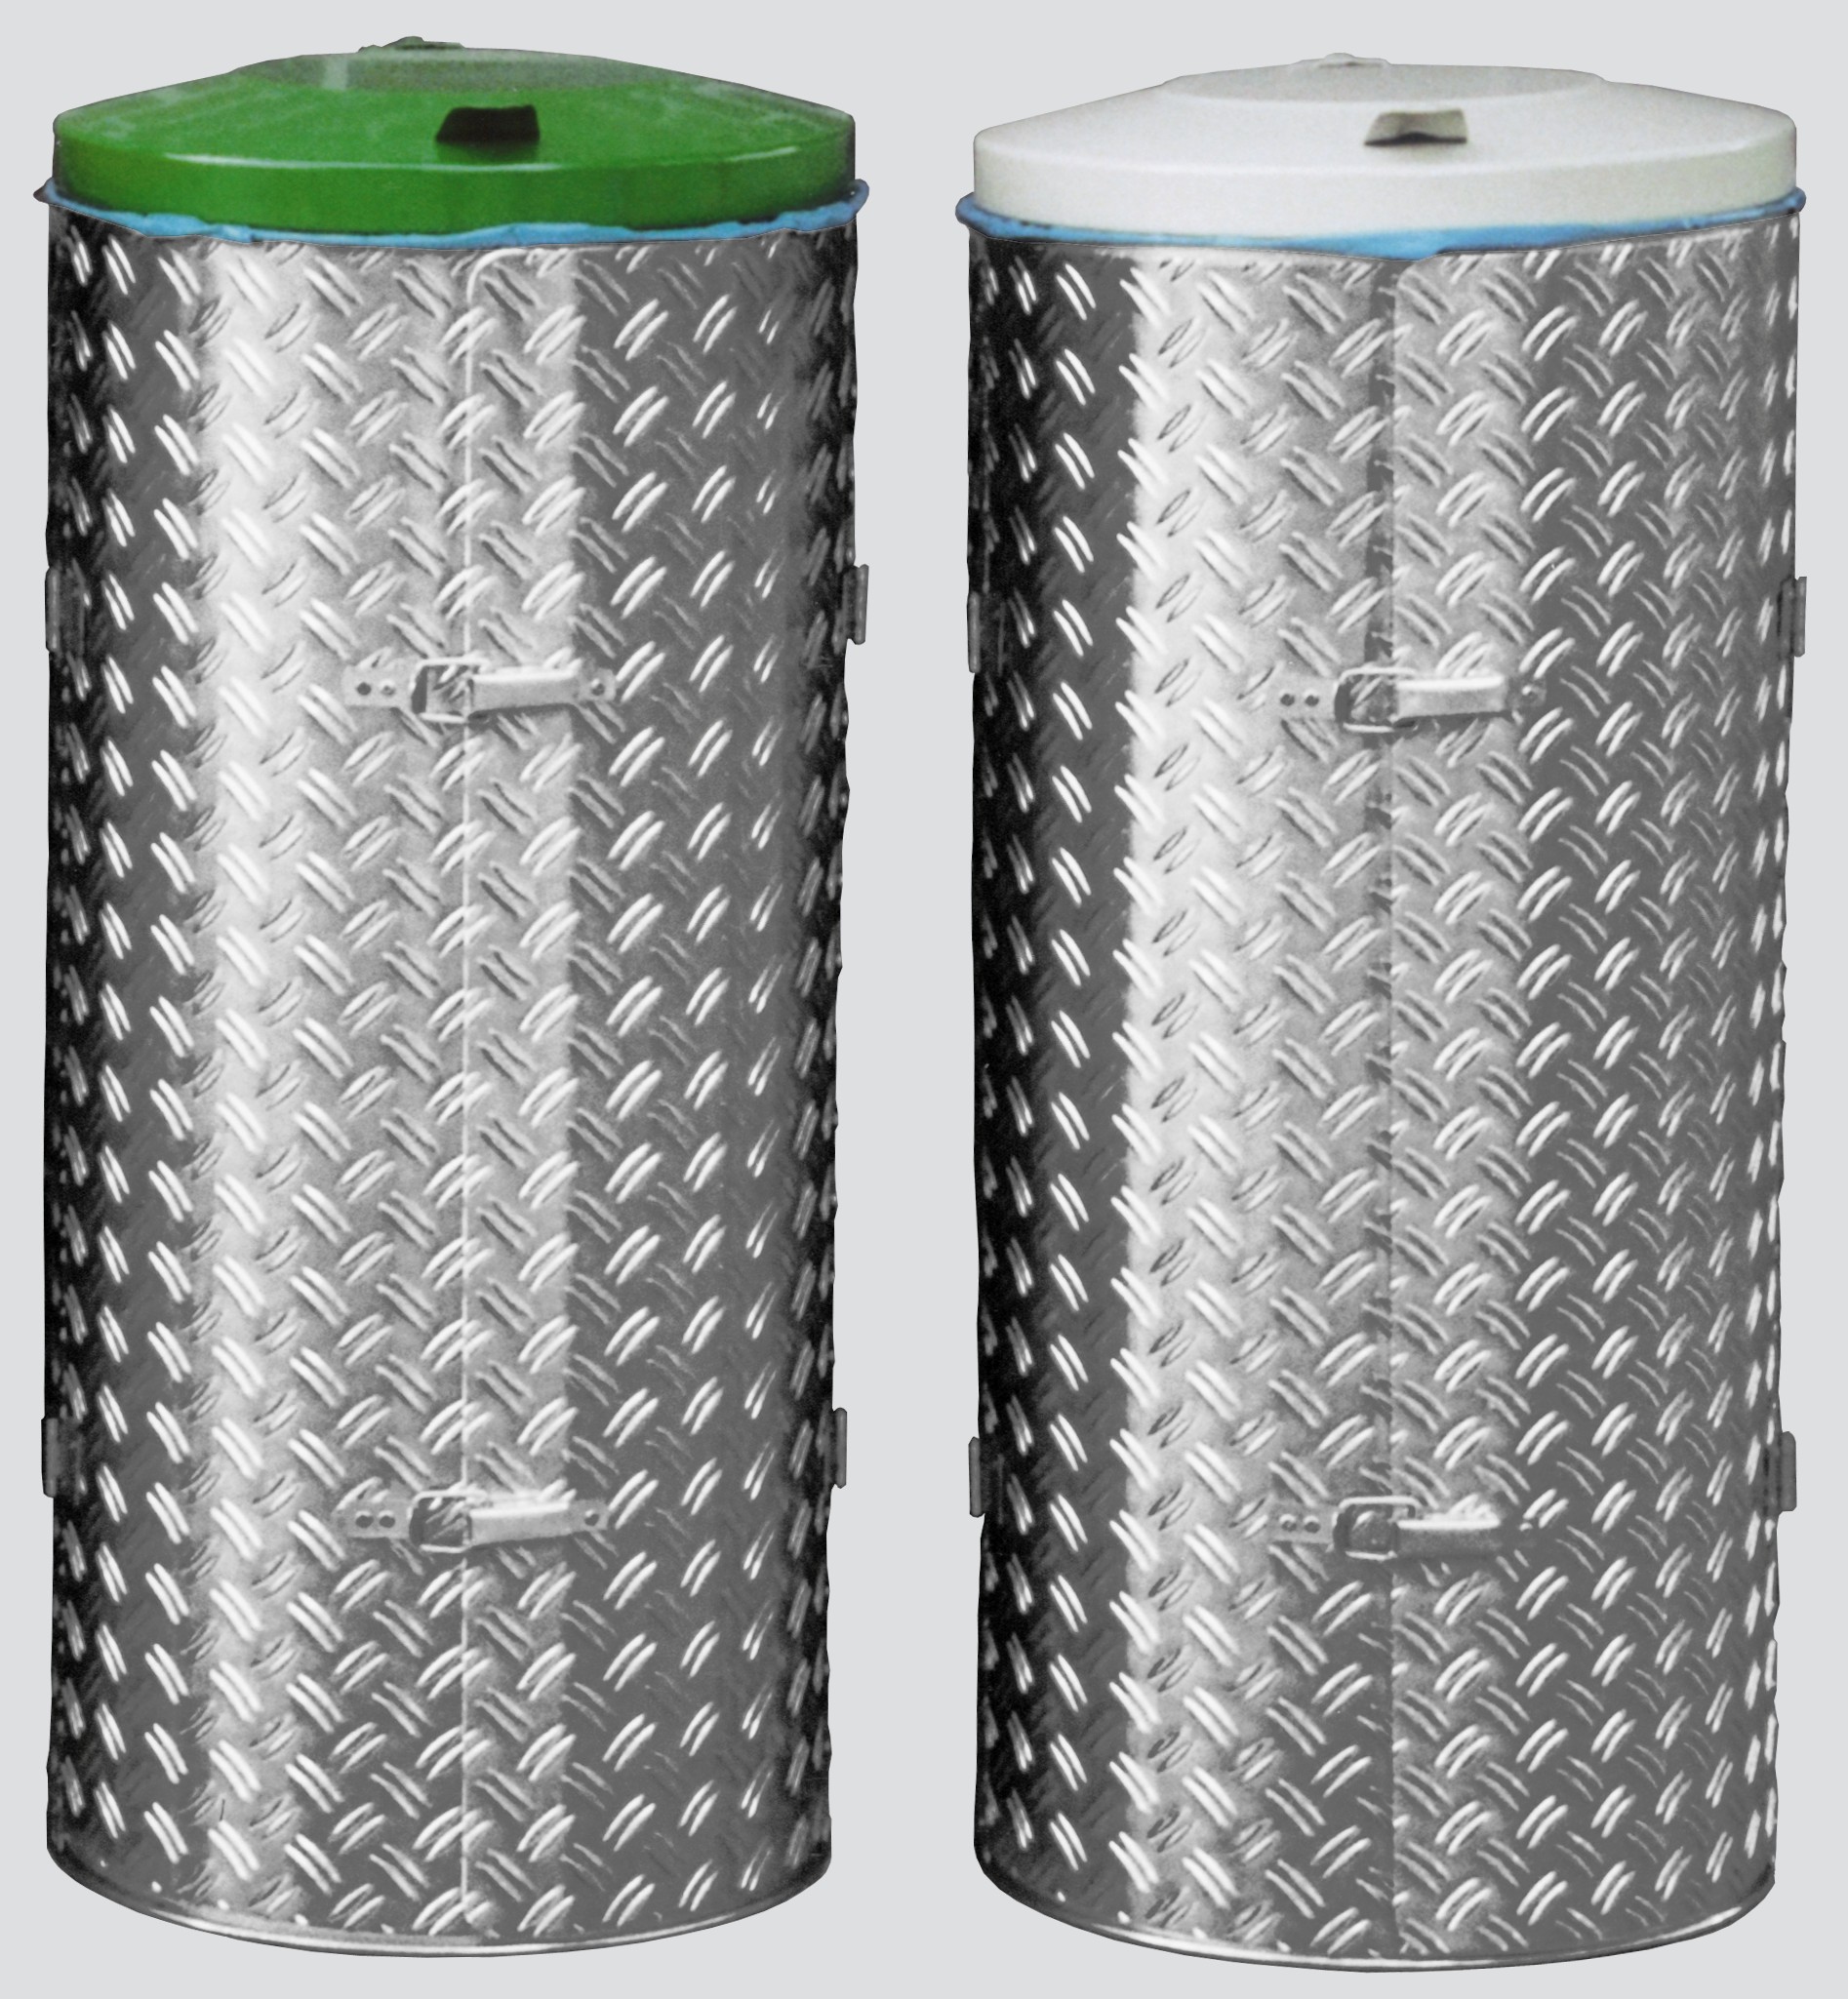 Kompakter Abfallsammler mit Türe | 120 Liter, HxBxT 99x43,5x43,5cm | Edelstahl | Alu-Duett-Blech | Deckel grau